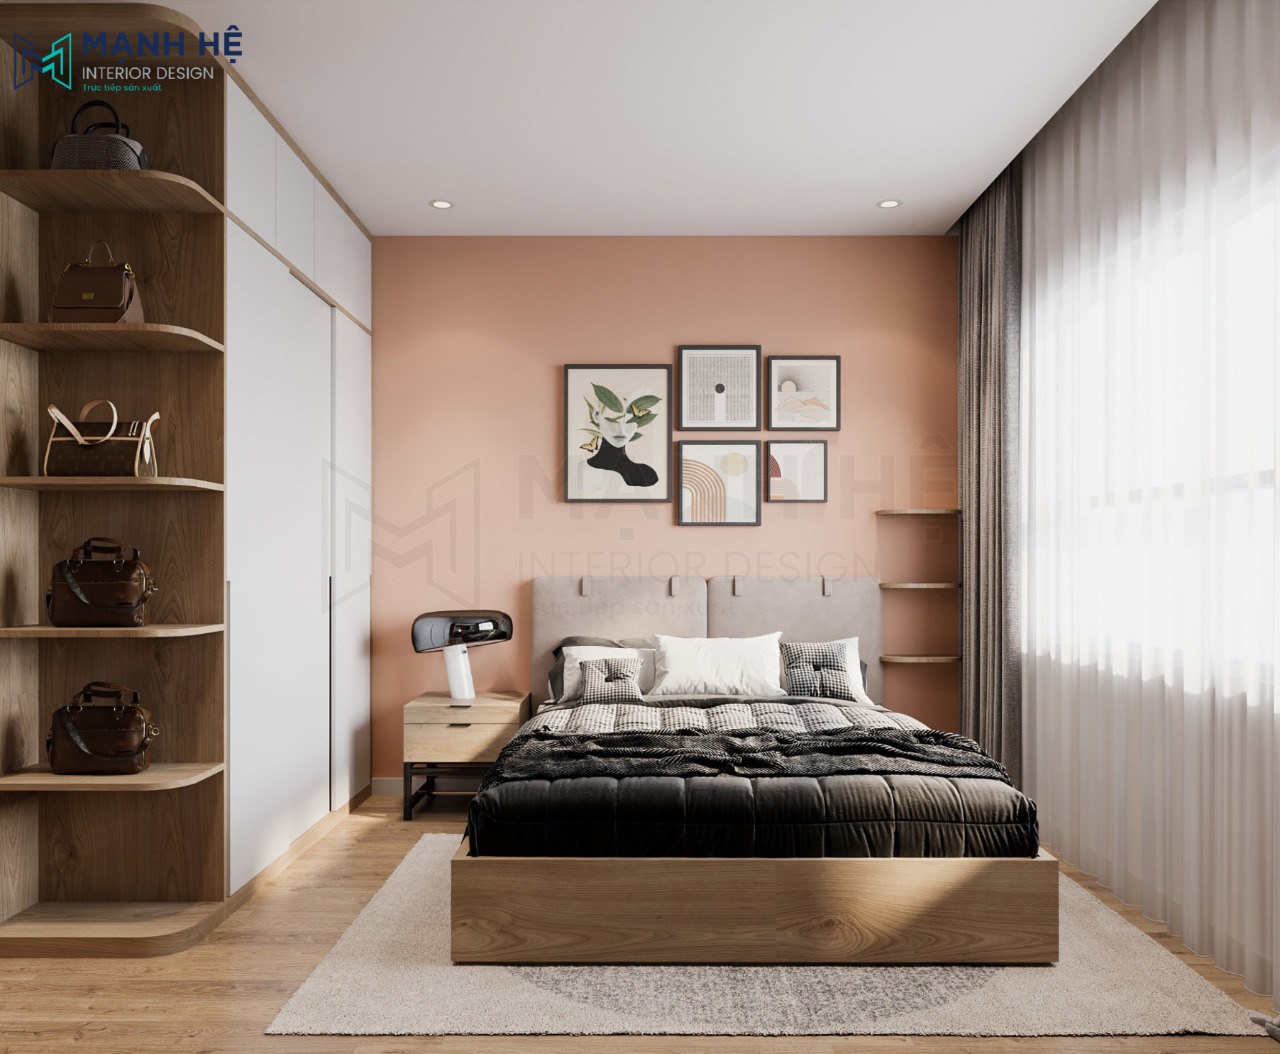 Thiết kế phòng ngủ master màu hồng cam cho gia chủ trẻ tuổi